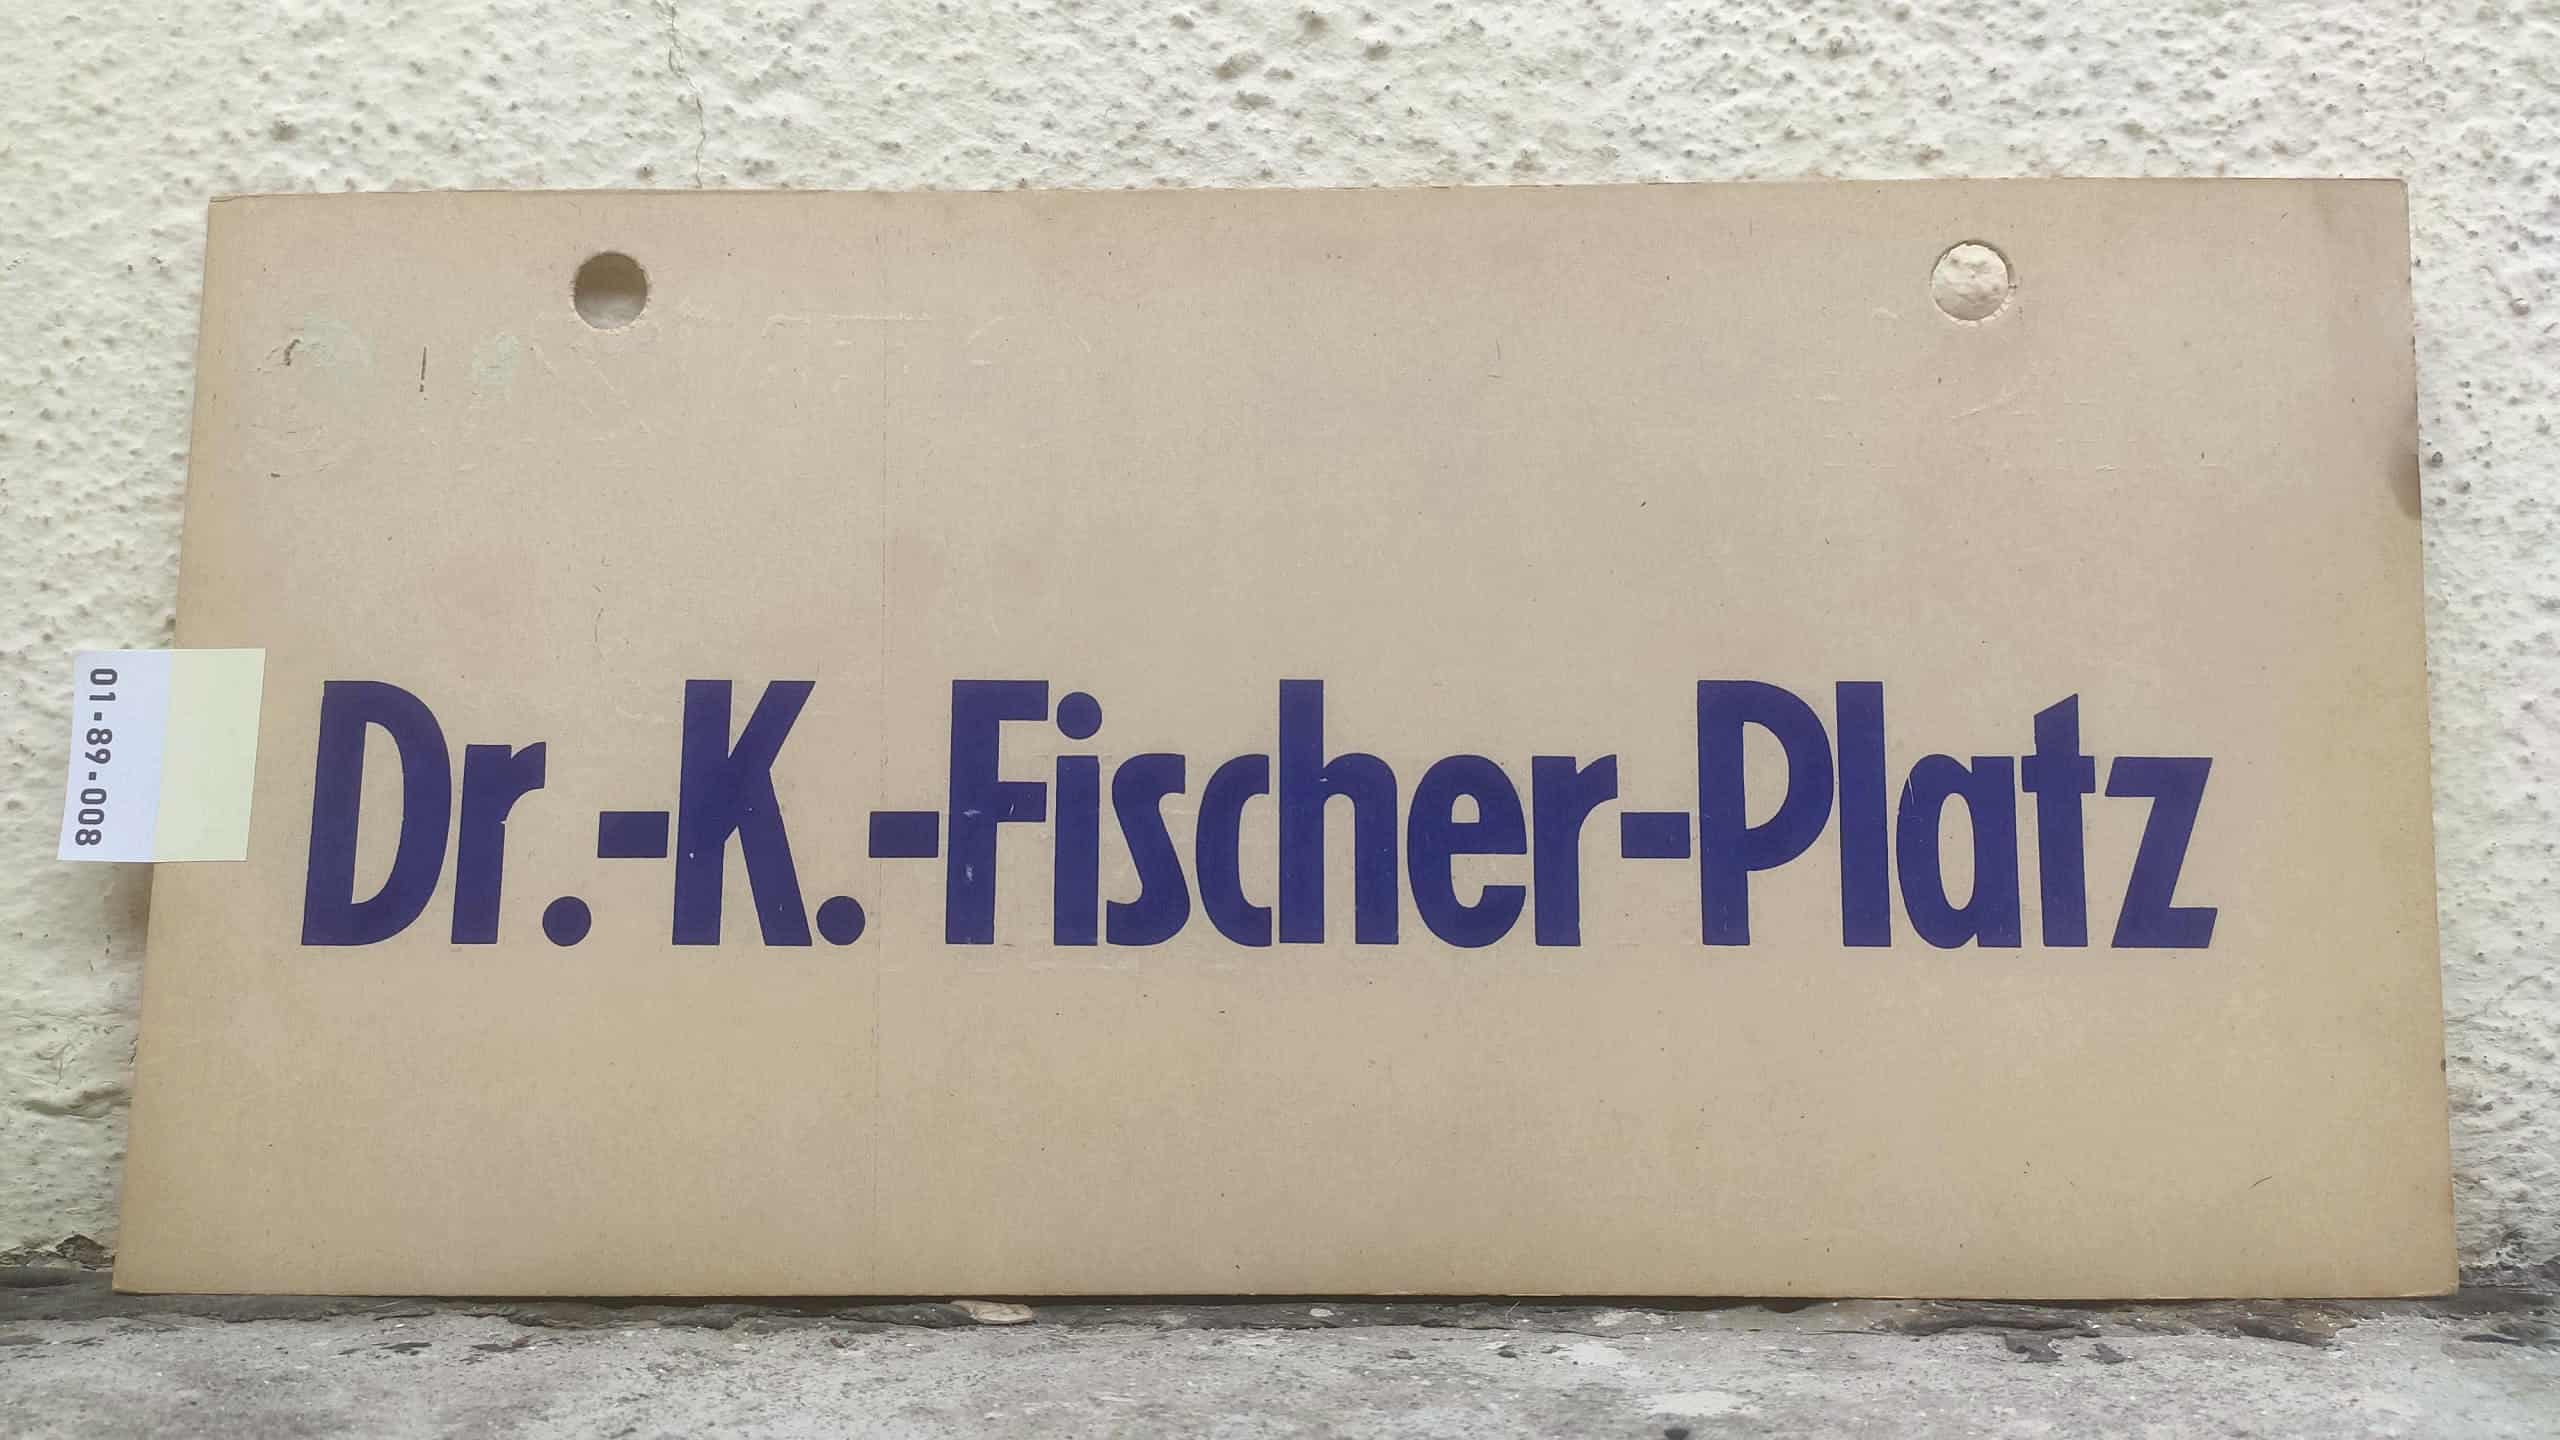 Dr.-K.-Fischer-Platz